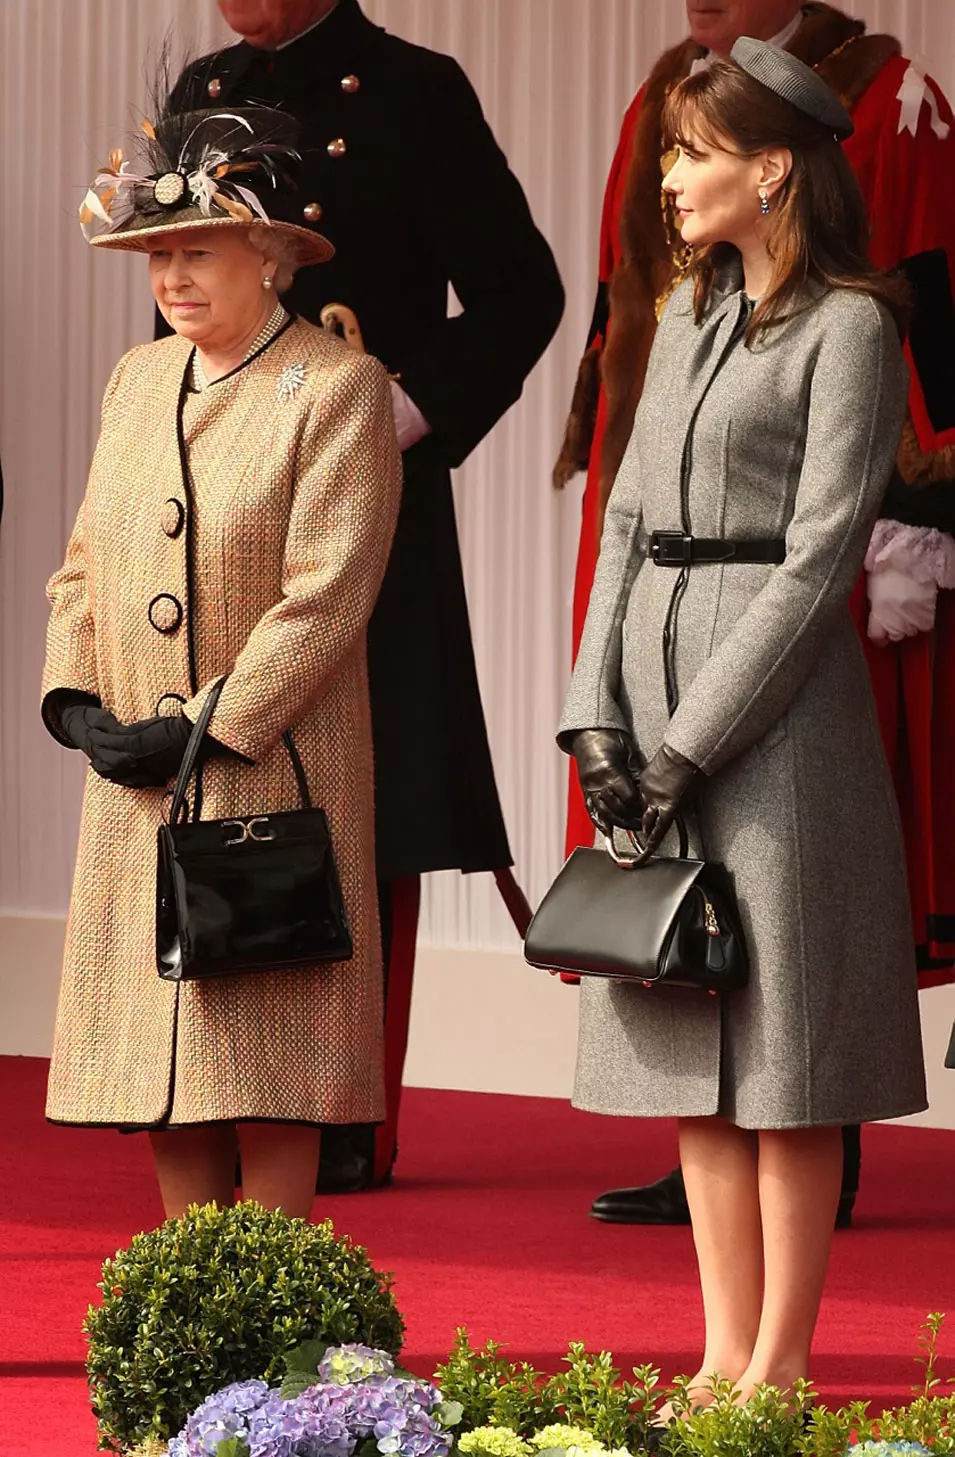 קרלה ברוני סרקוזי ומלכת בריטניה אליזבת השנייה בטקס קבלת פנים בווינדזור, לונדון, 26 מרץ 2008, במסגרת ביקור בן יומיים בבירה הבריטית